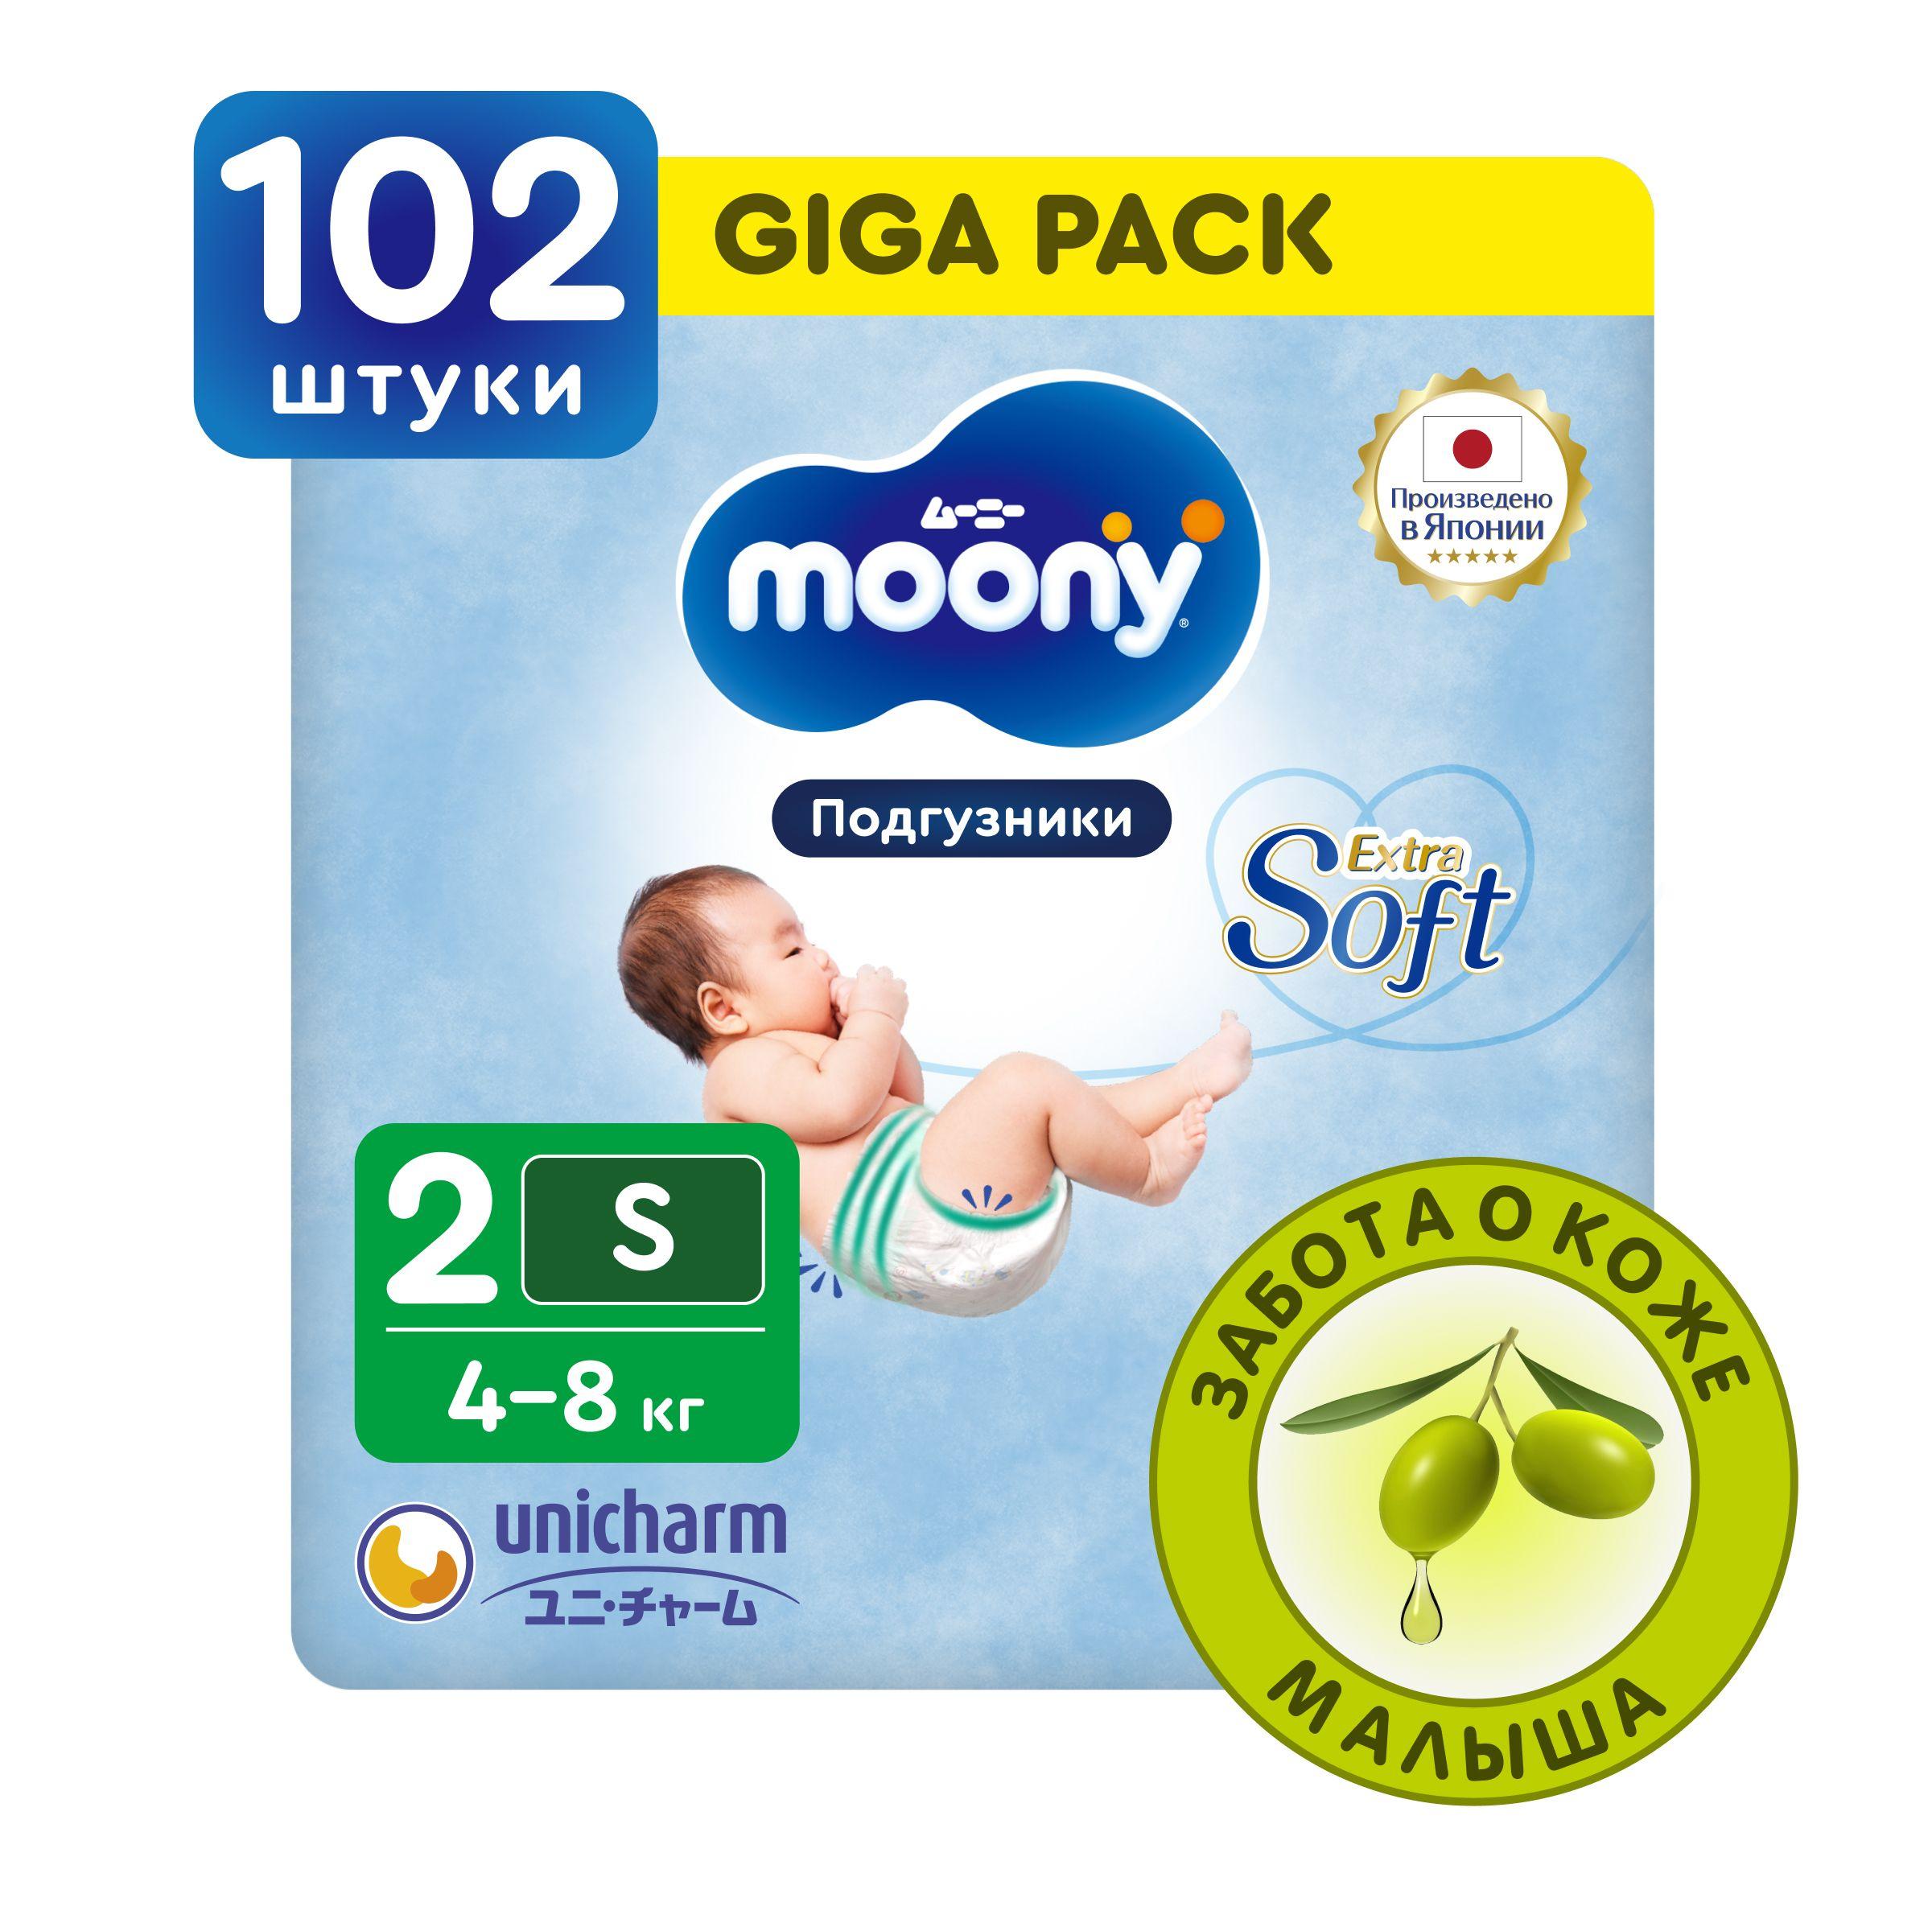 MOONY Японские подгузники для новорожденных Extra Soft 2 размер S 4-8 кг, 102 шт GIGA pack